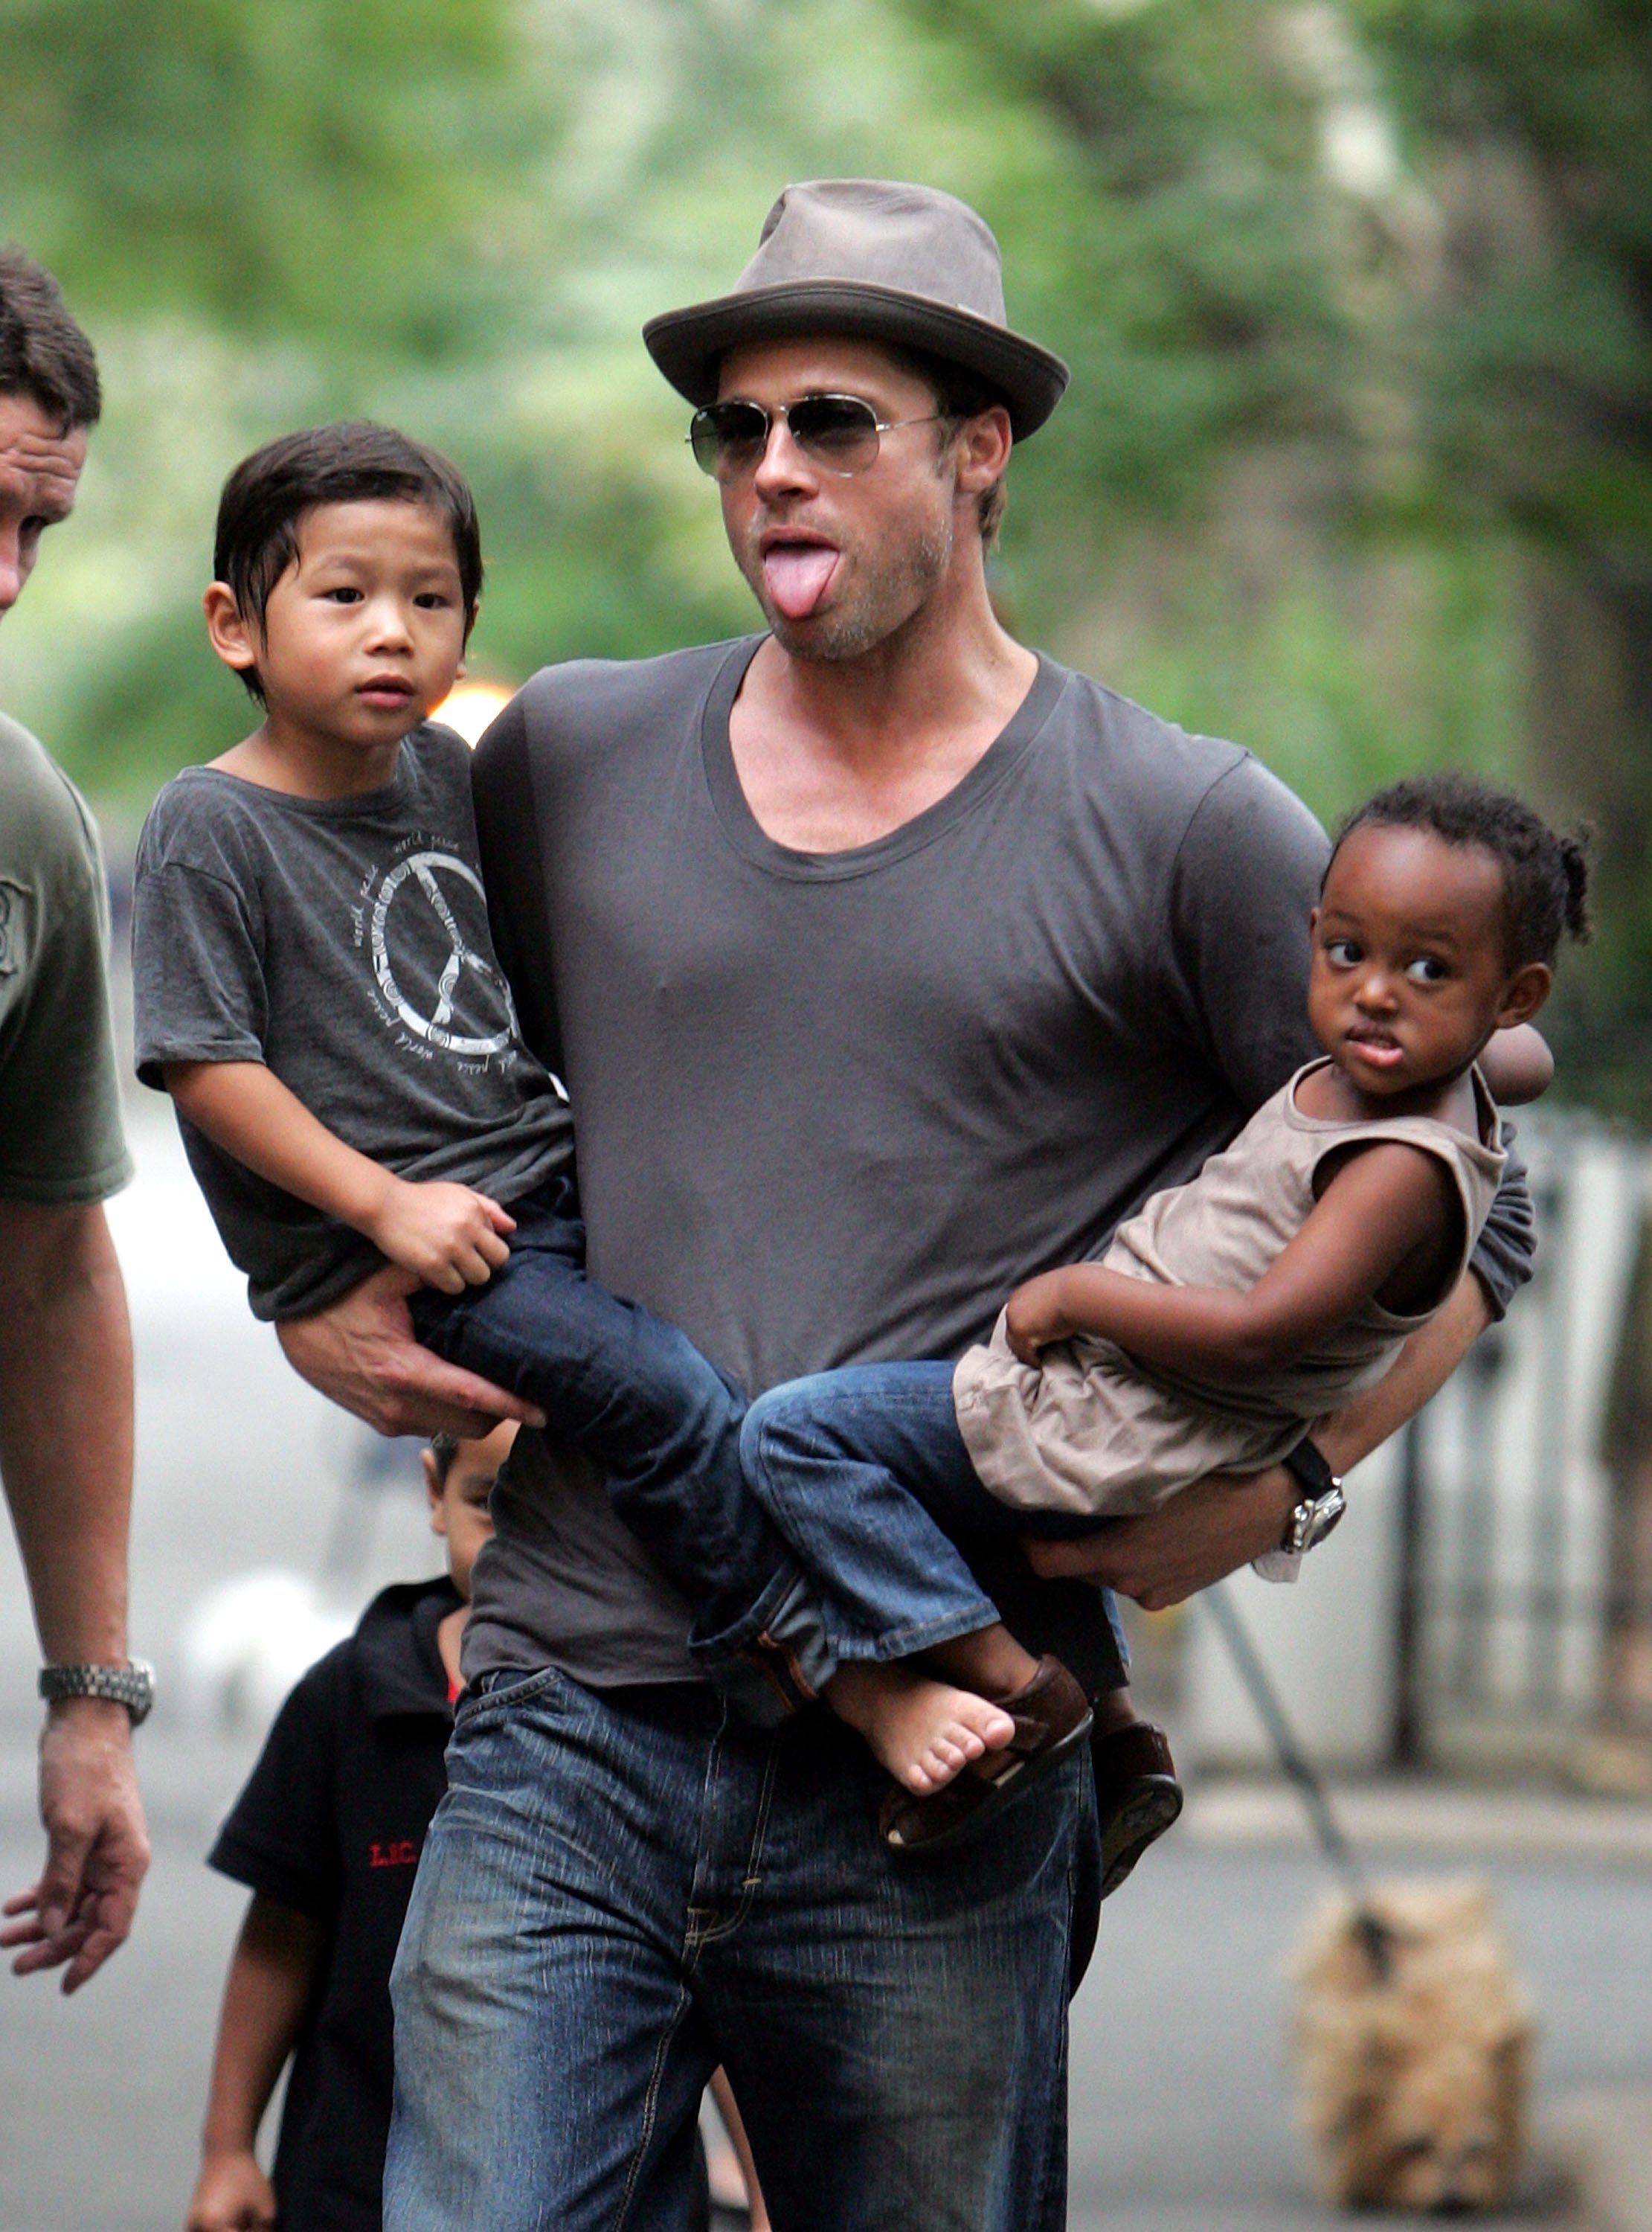 Brad Pitt visita un parque infantil con sus hijos Zahara, Pax y Maddox Jolie-Pitt el 26 de agosto de 2007, en Nueva York. | Foto: Getty Images